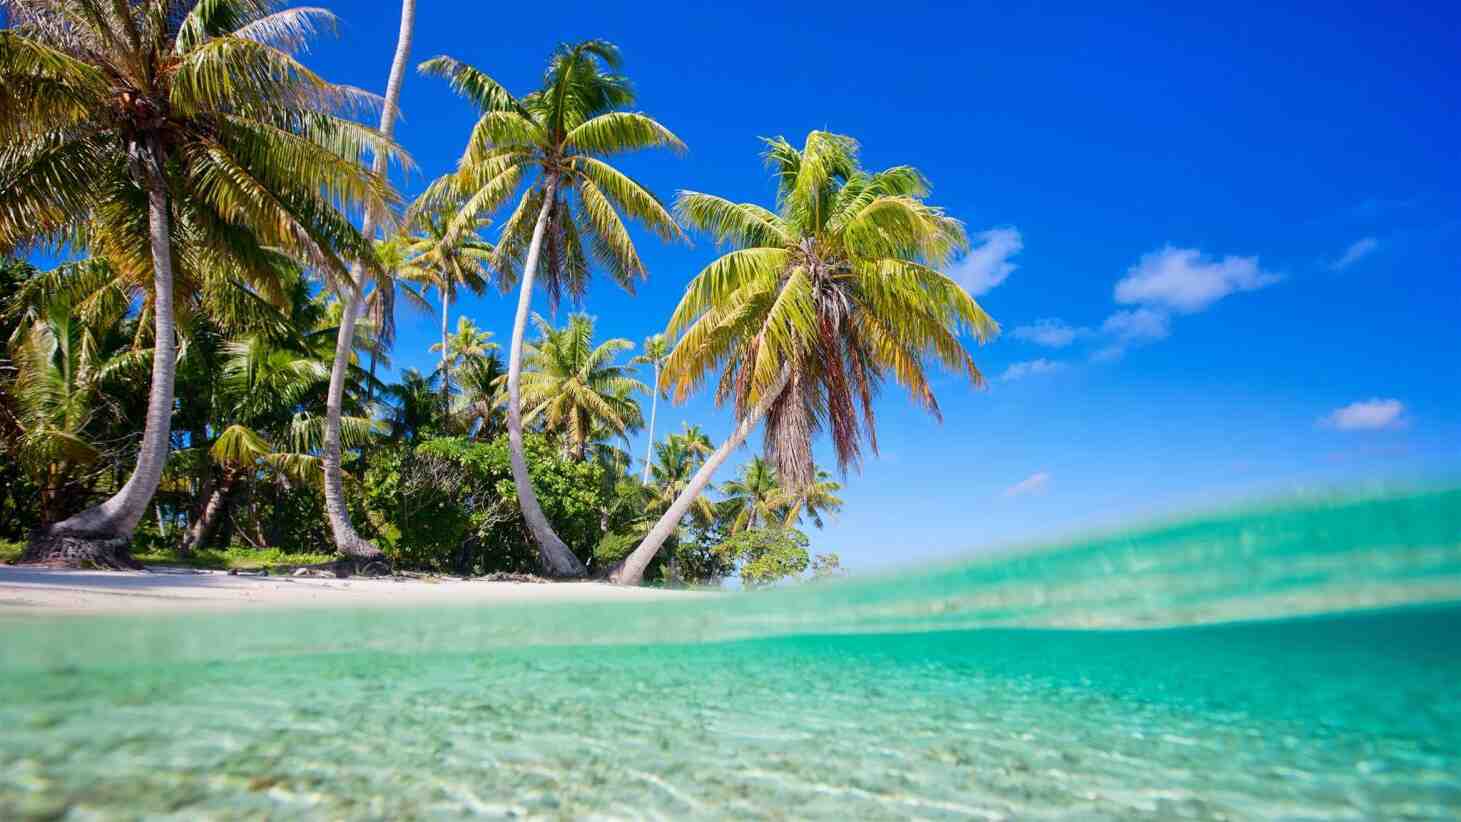 This insula să locuiești în Polinezia?